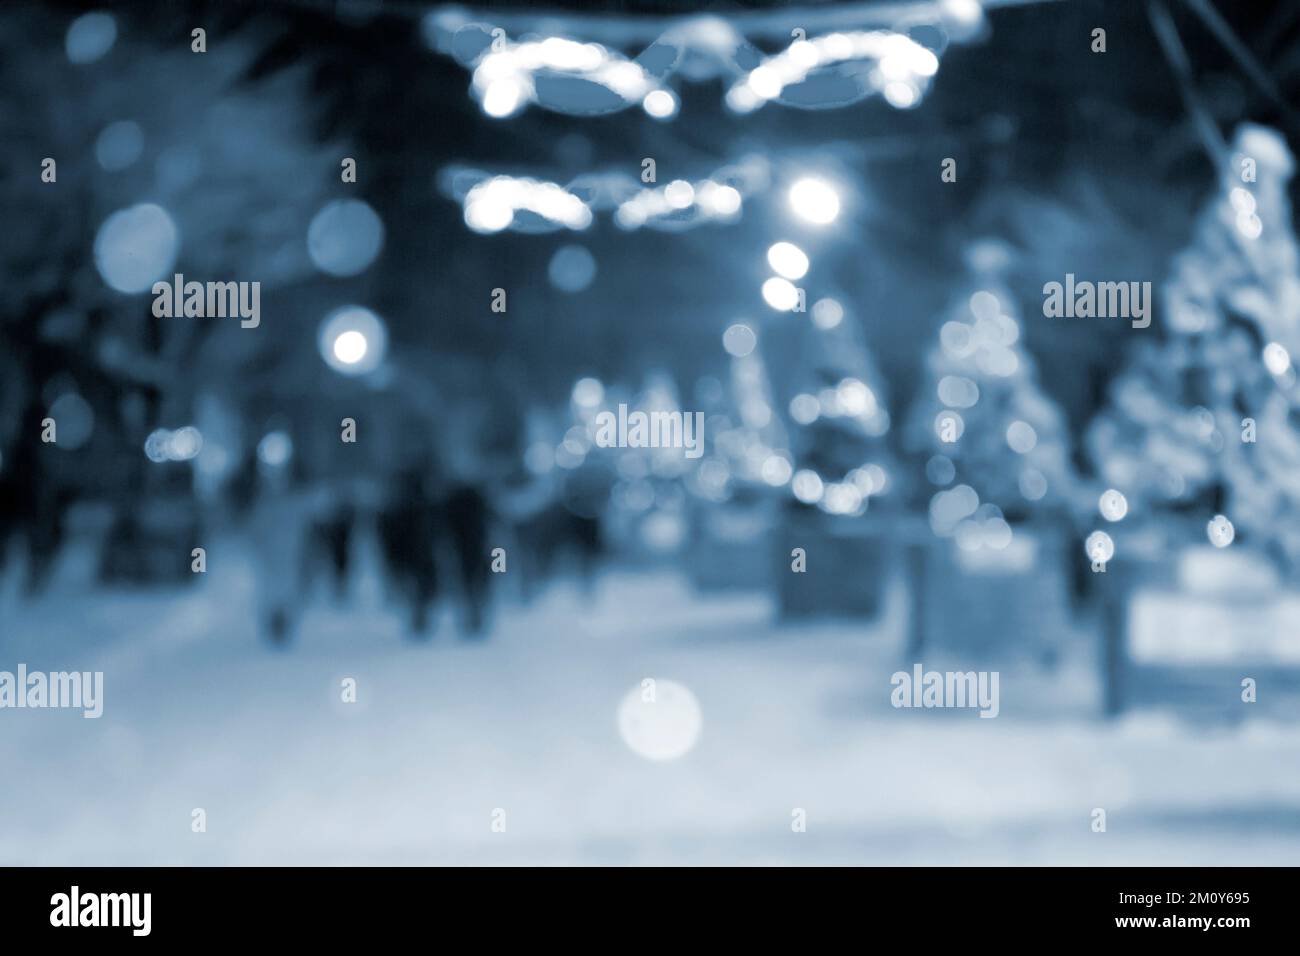 Résumé arrière-plan flou. Les gens qui marchent dans la rue des arbres de Noël décorés illuminés, illuminés et lumineux guirlandes dans la ville pendant les fortes chutes de neige la nuit d'hiver couleur bleue Banque D'Images